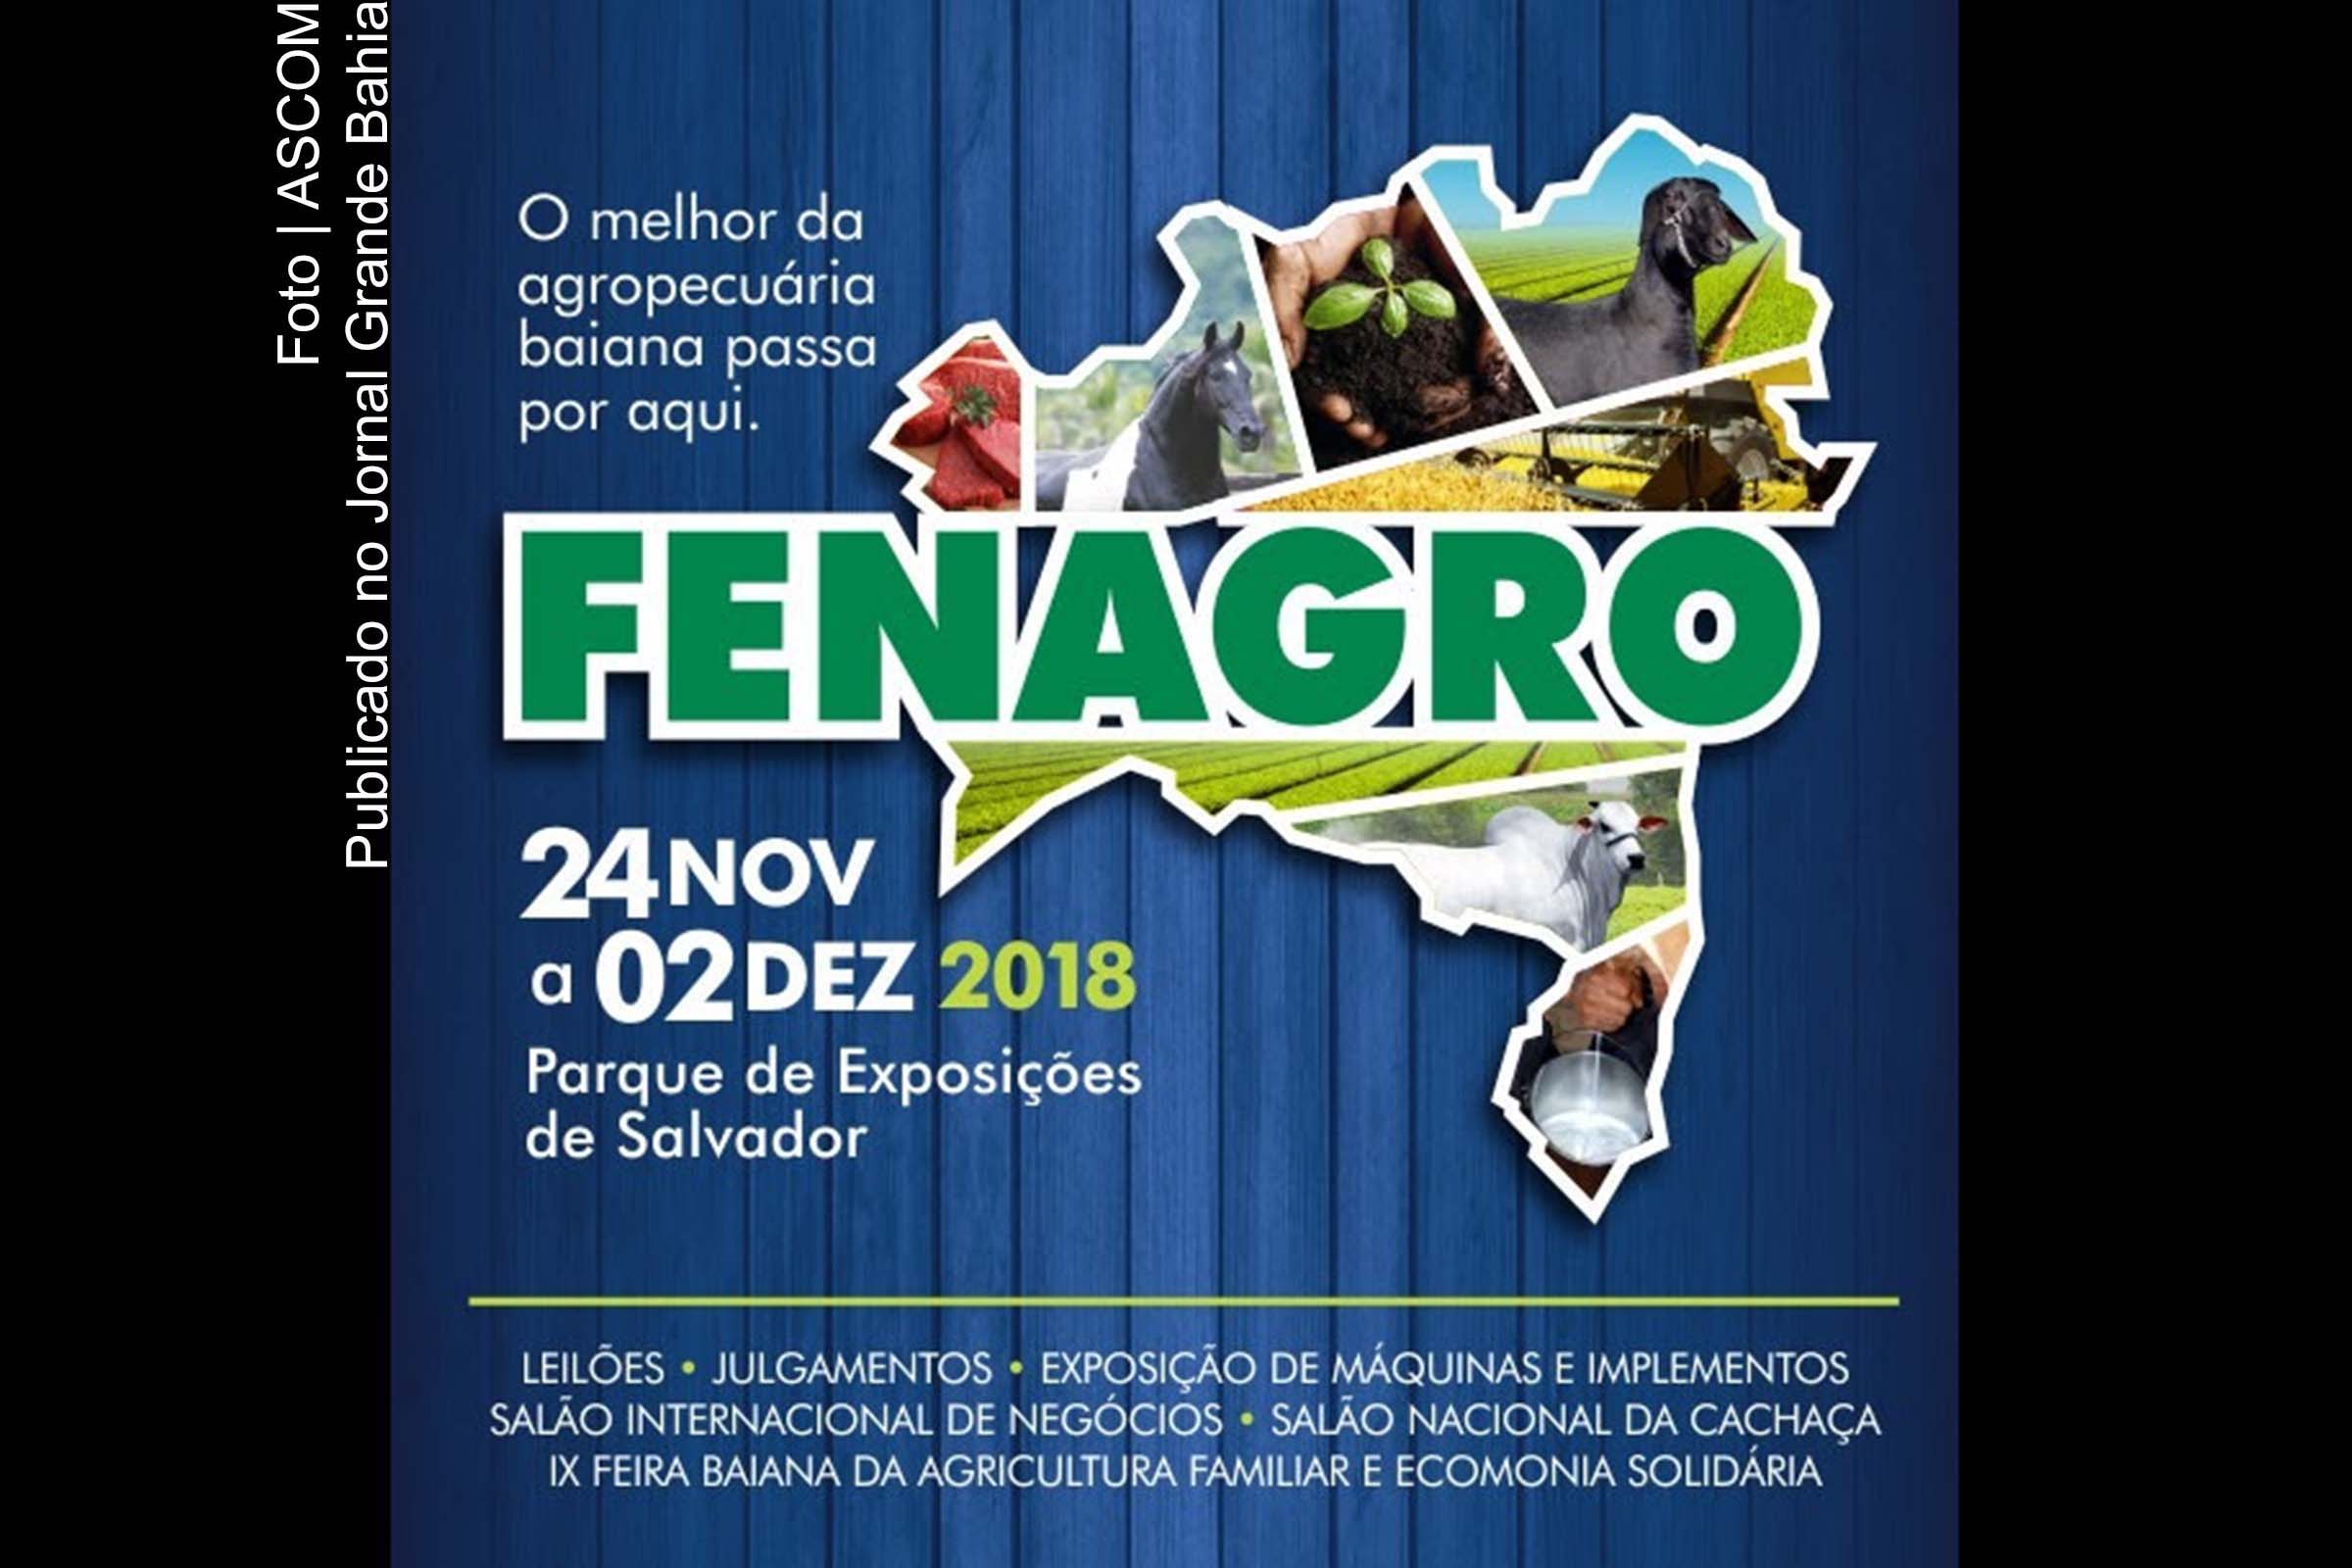 Cartaz anuncia edição do da FENAGRO, evento ocorre em Salvador.